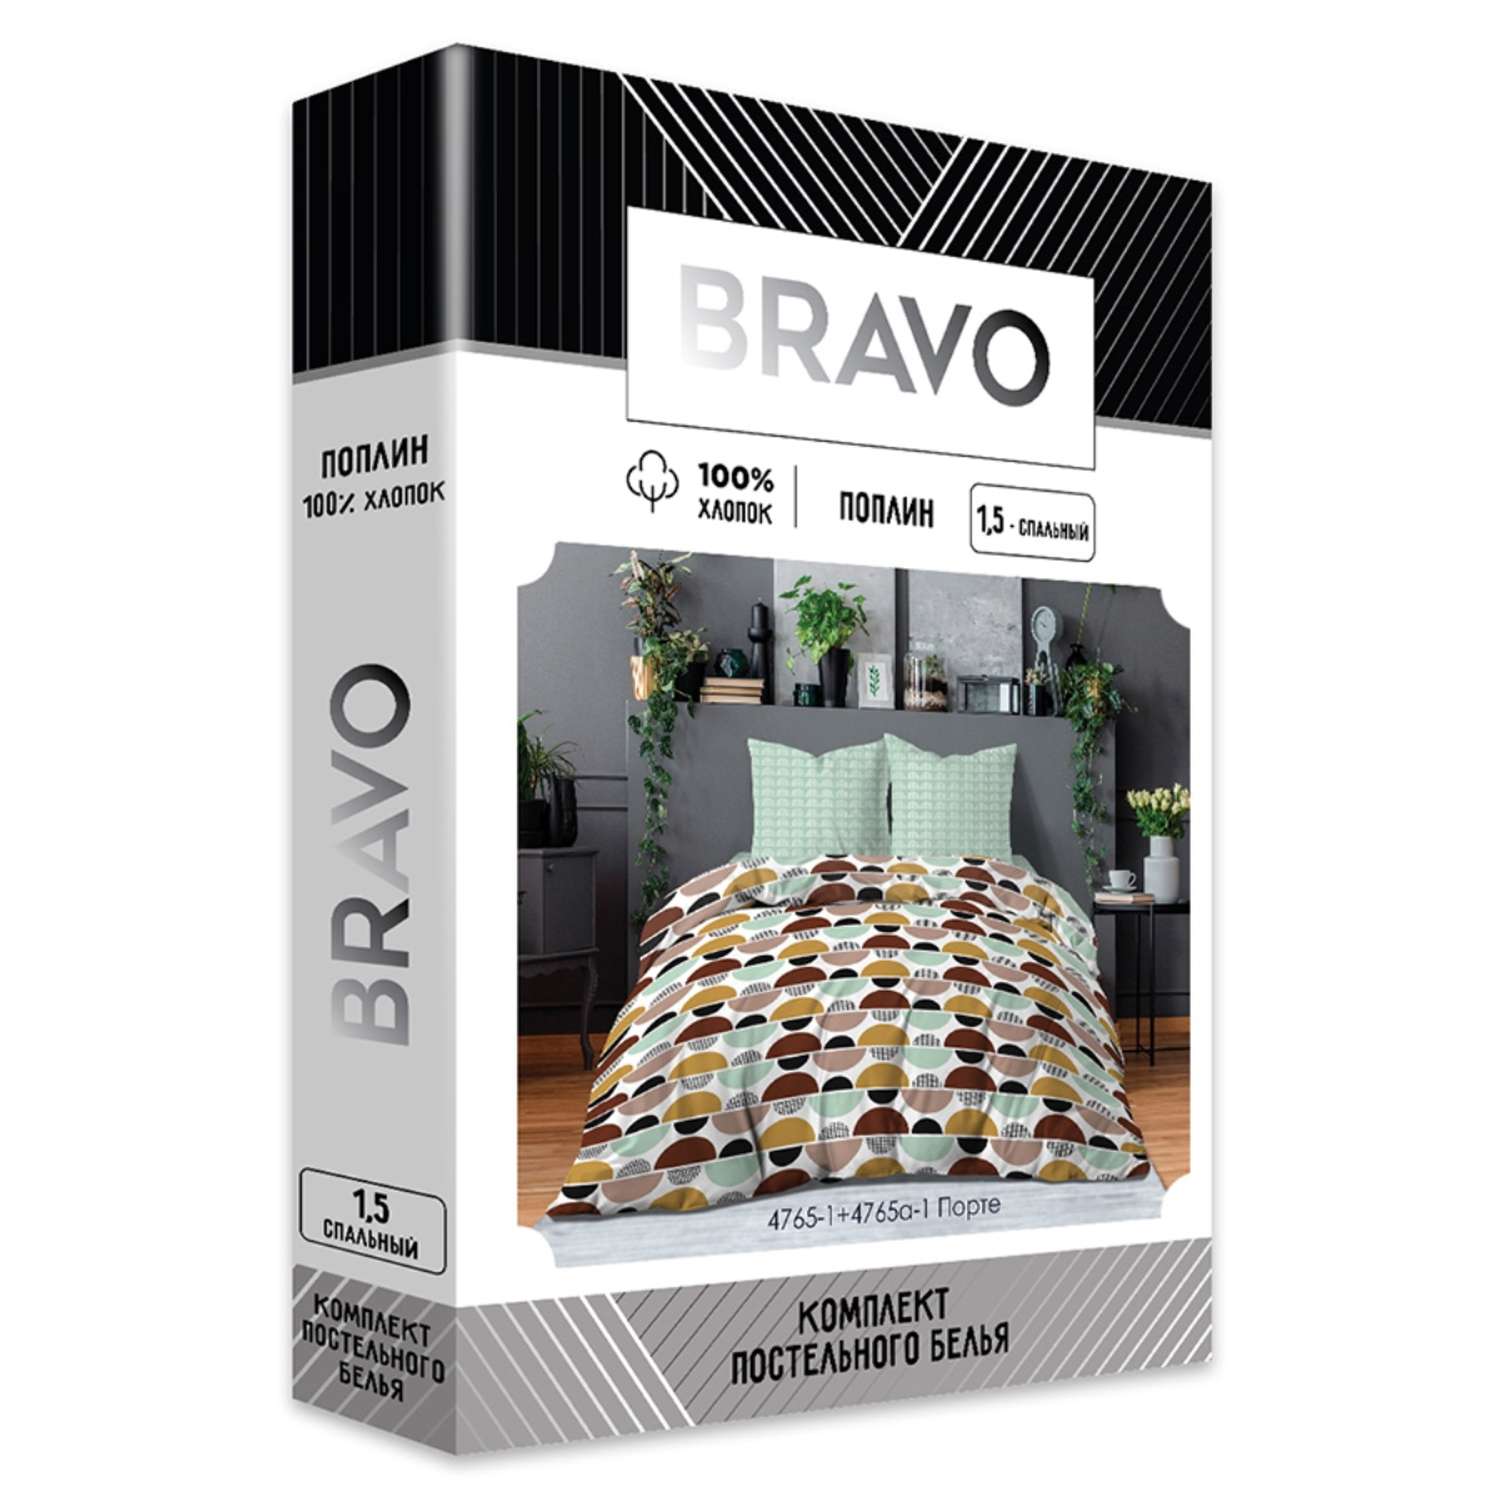 Комплект постельного белья Bravo Порте 1.5 спальный наволочки 70х70 - фото 8